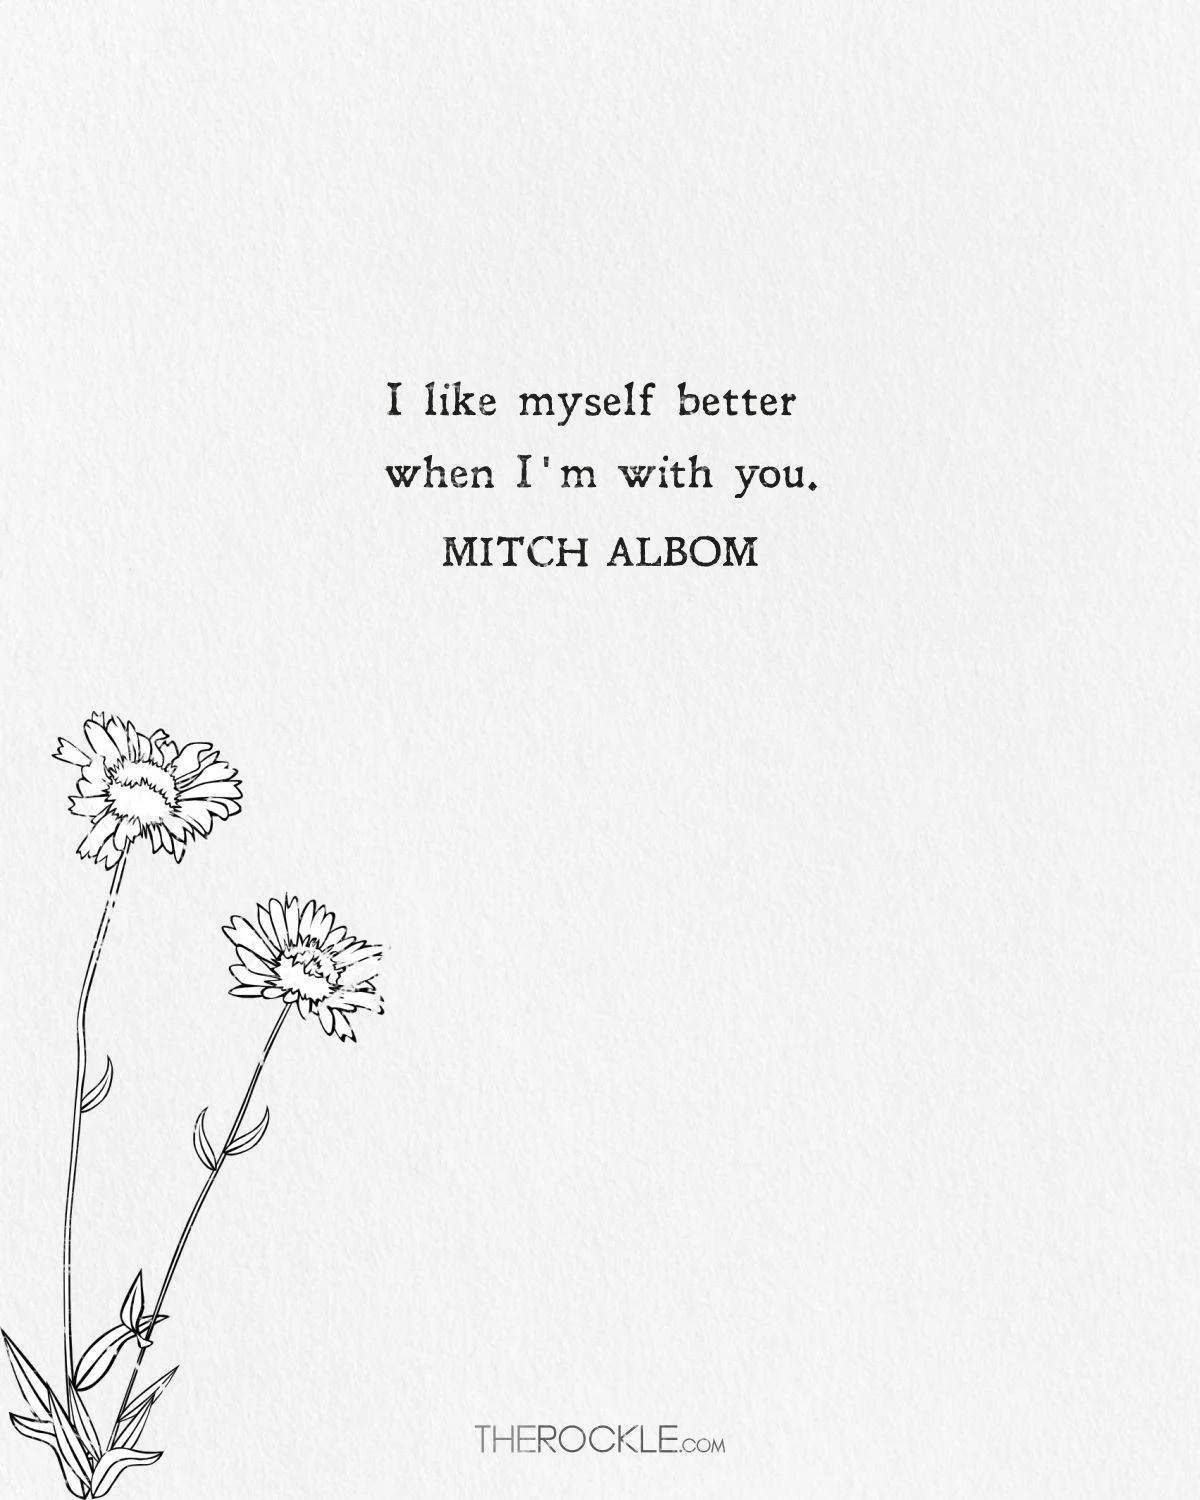 Mitch Albom quote